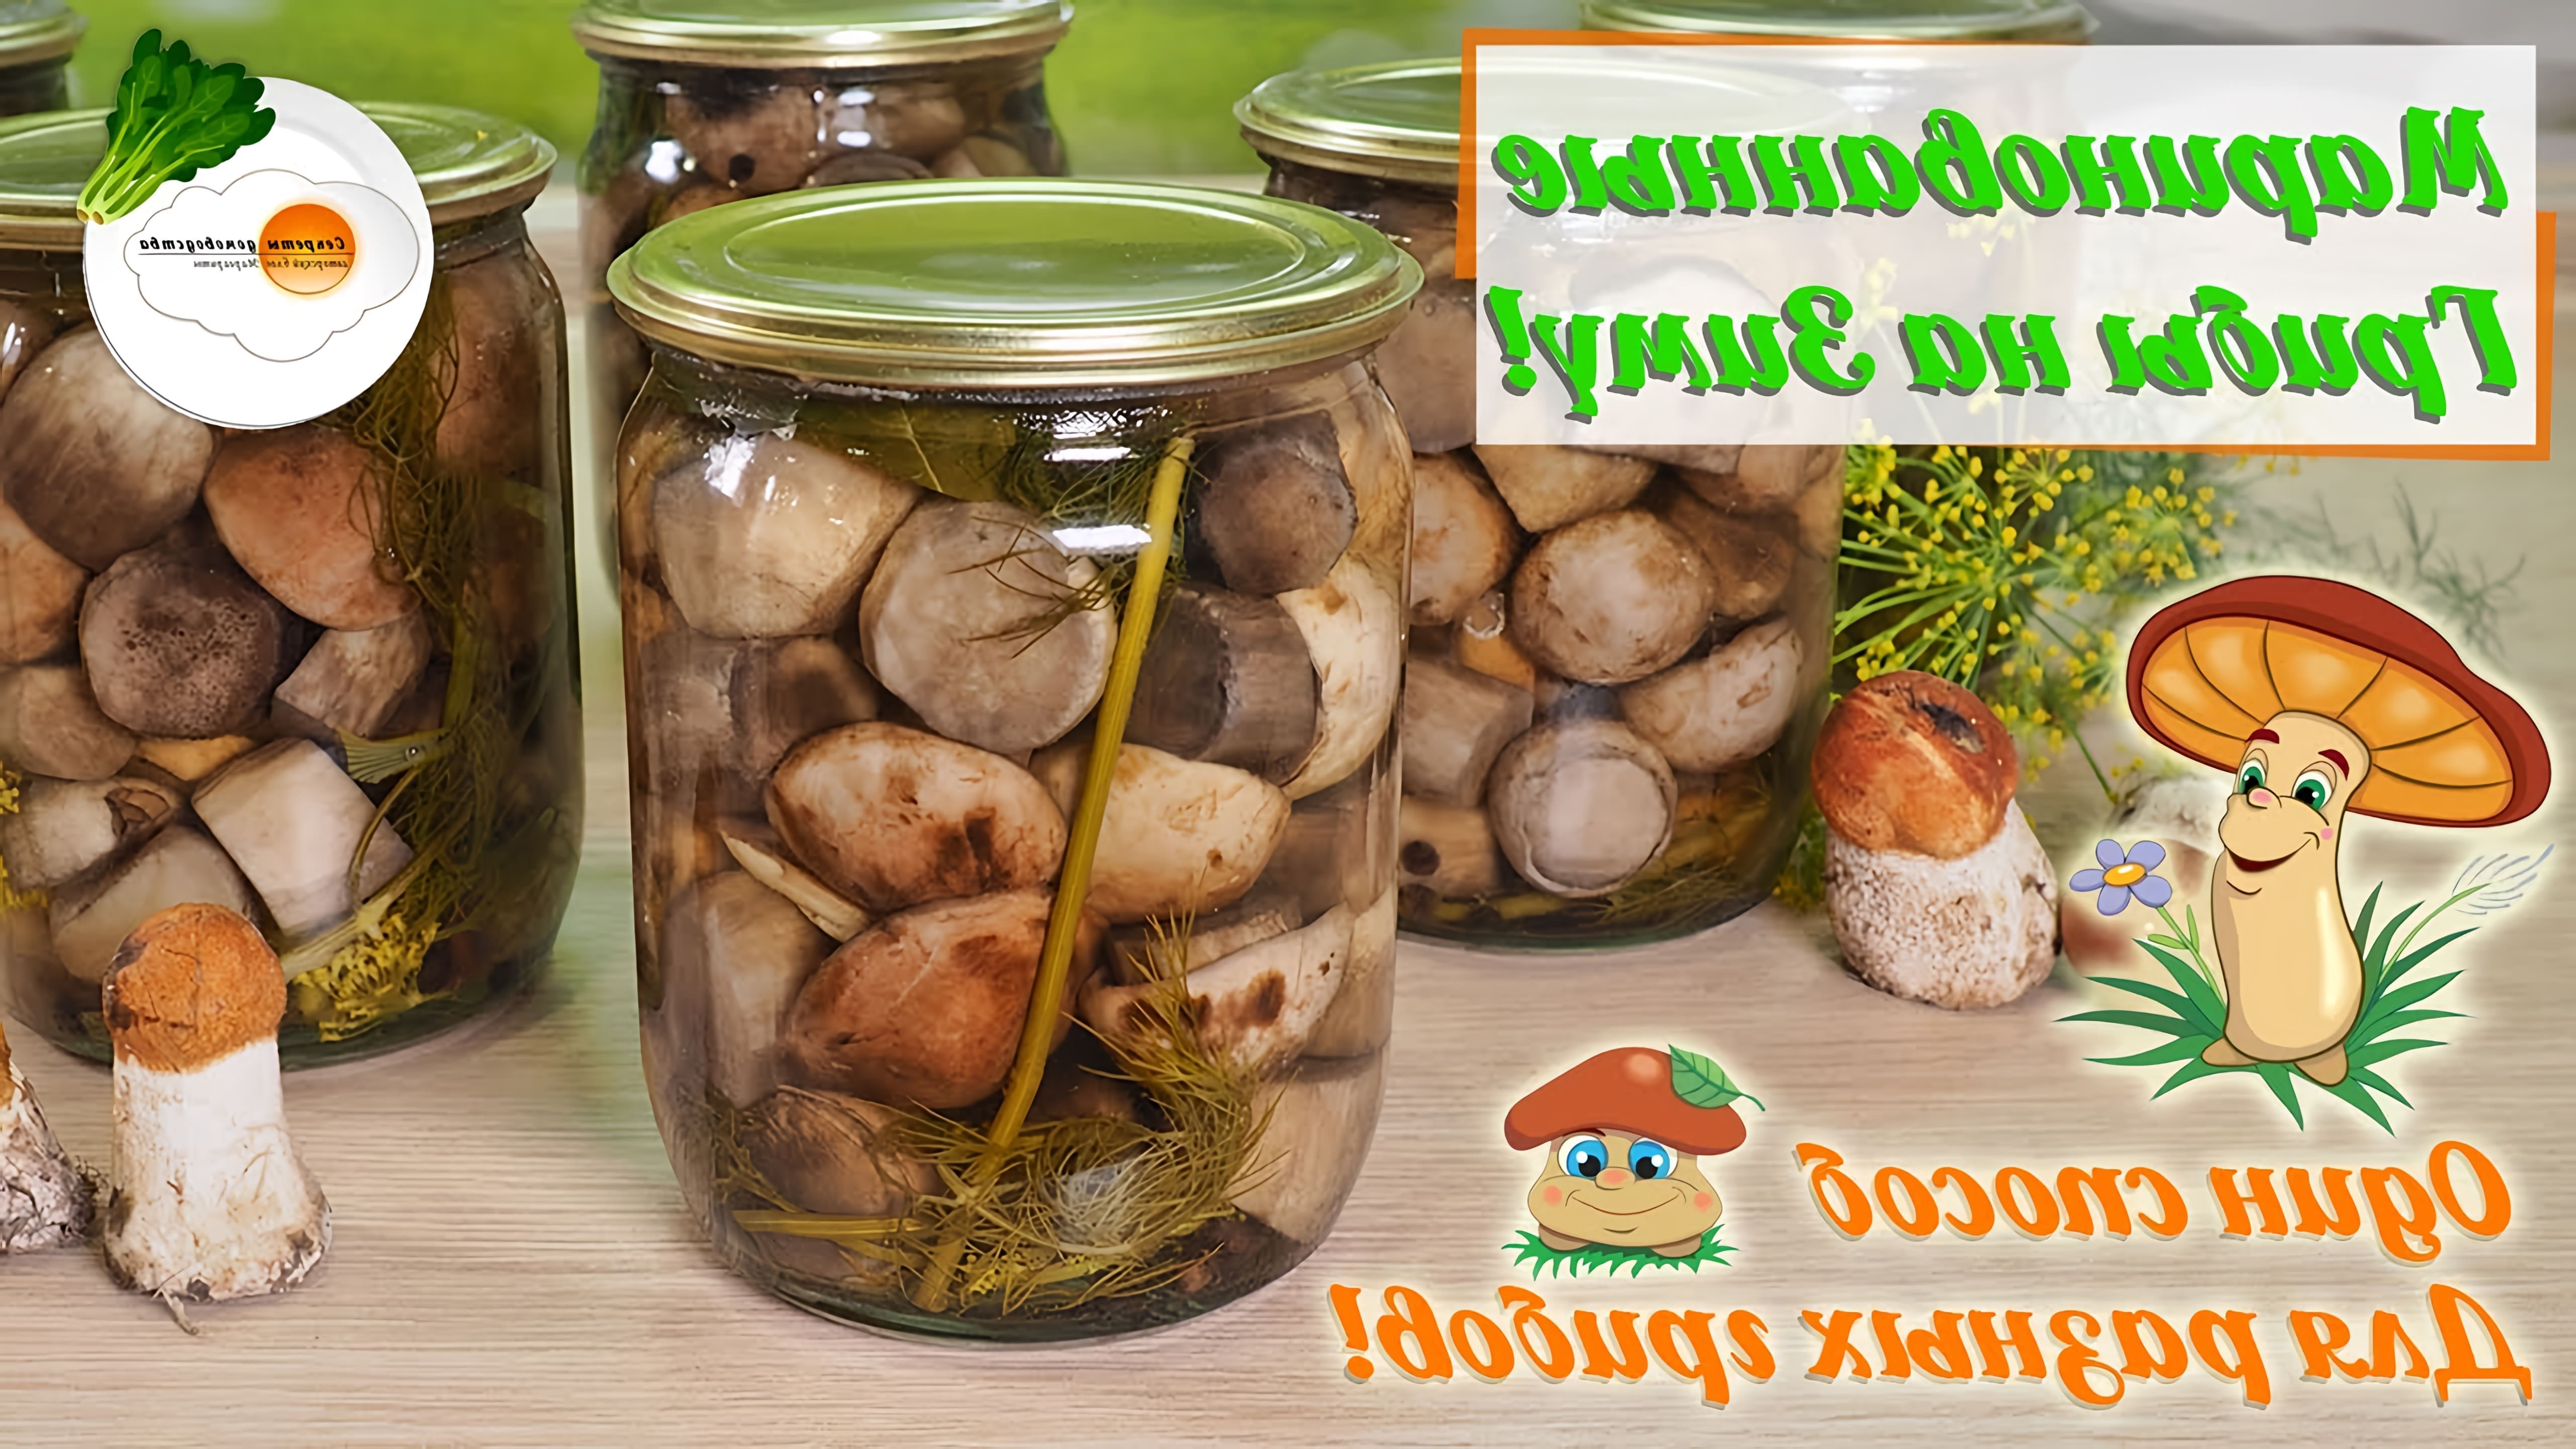 Сегодня будем мариновать грибы на зиму (Pickled Mushrooms for the Winter) по универсальному рецепту. По нему очень... 